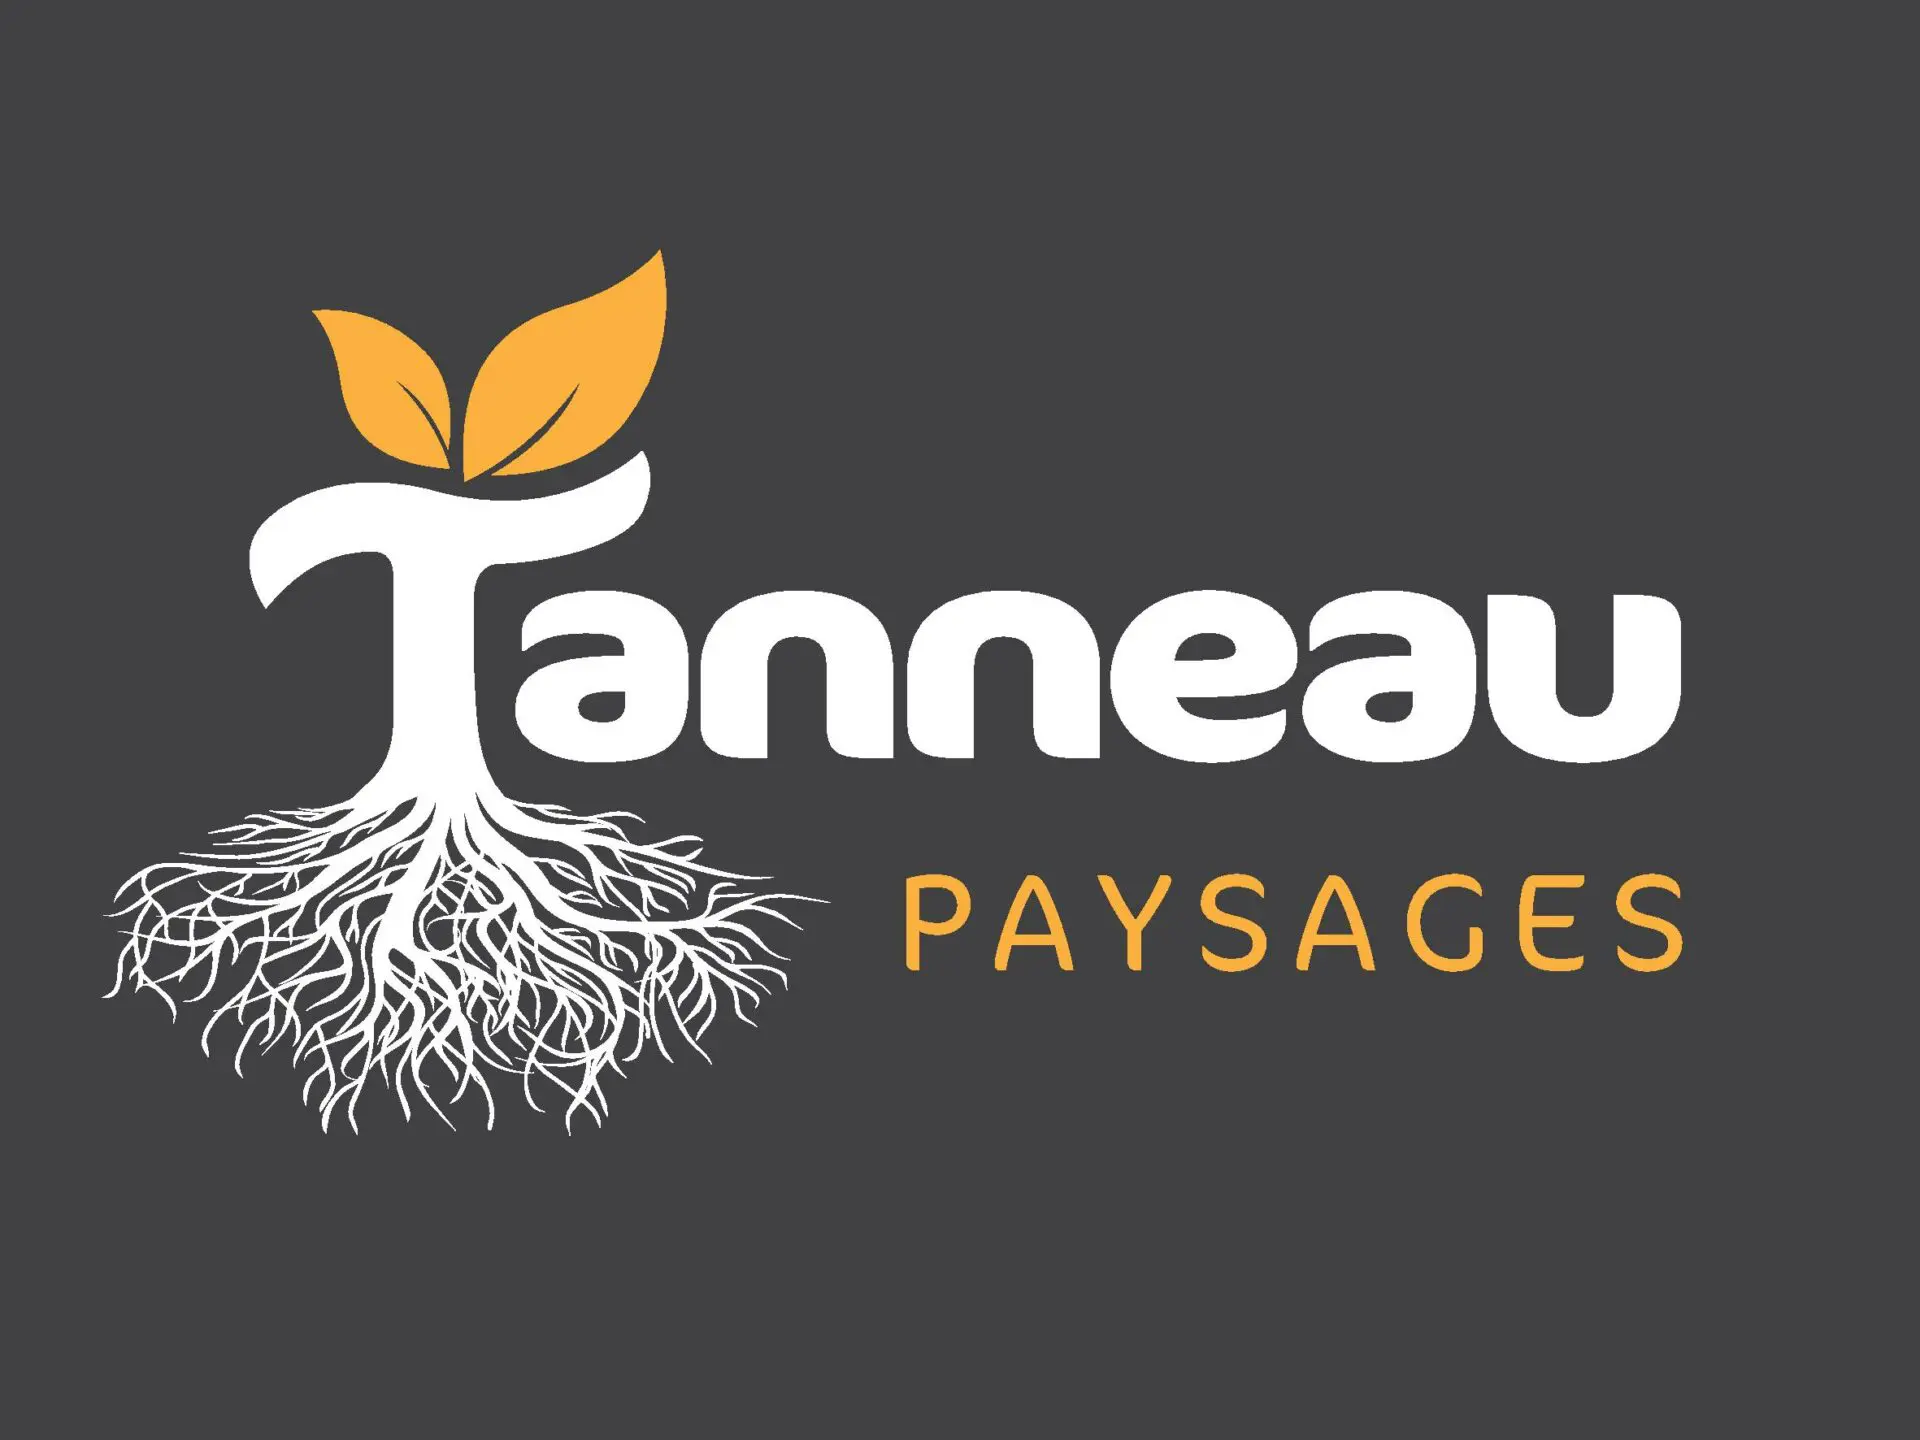 TANNEAU PAYSAGES